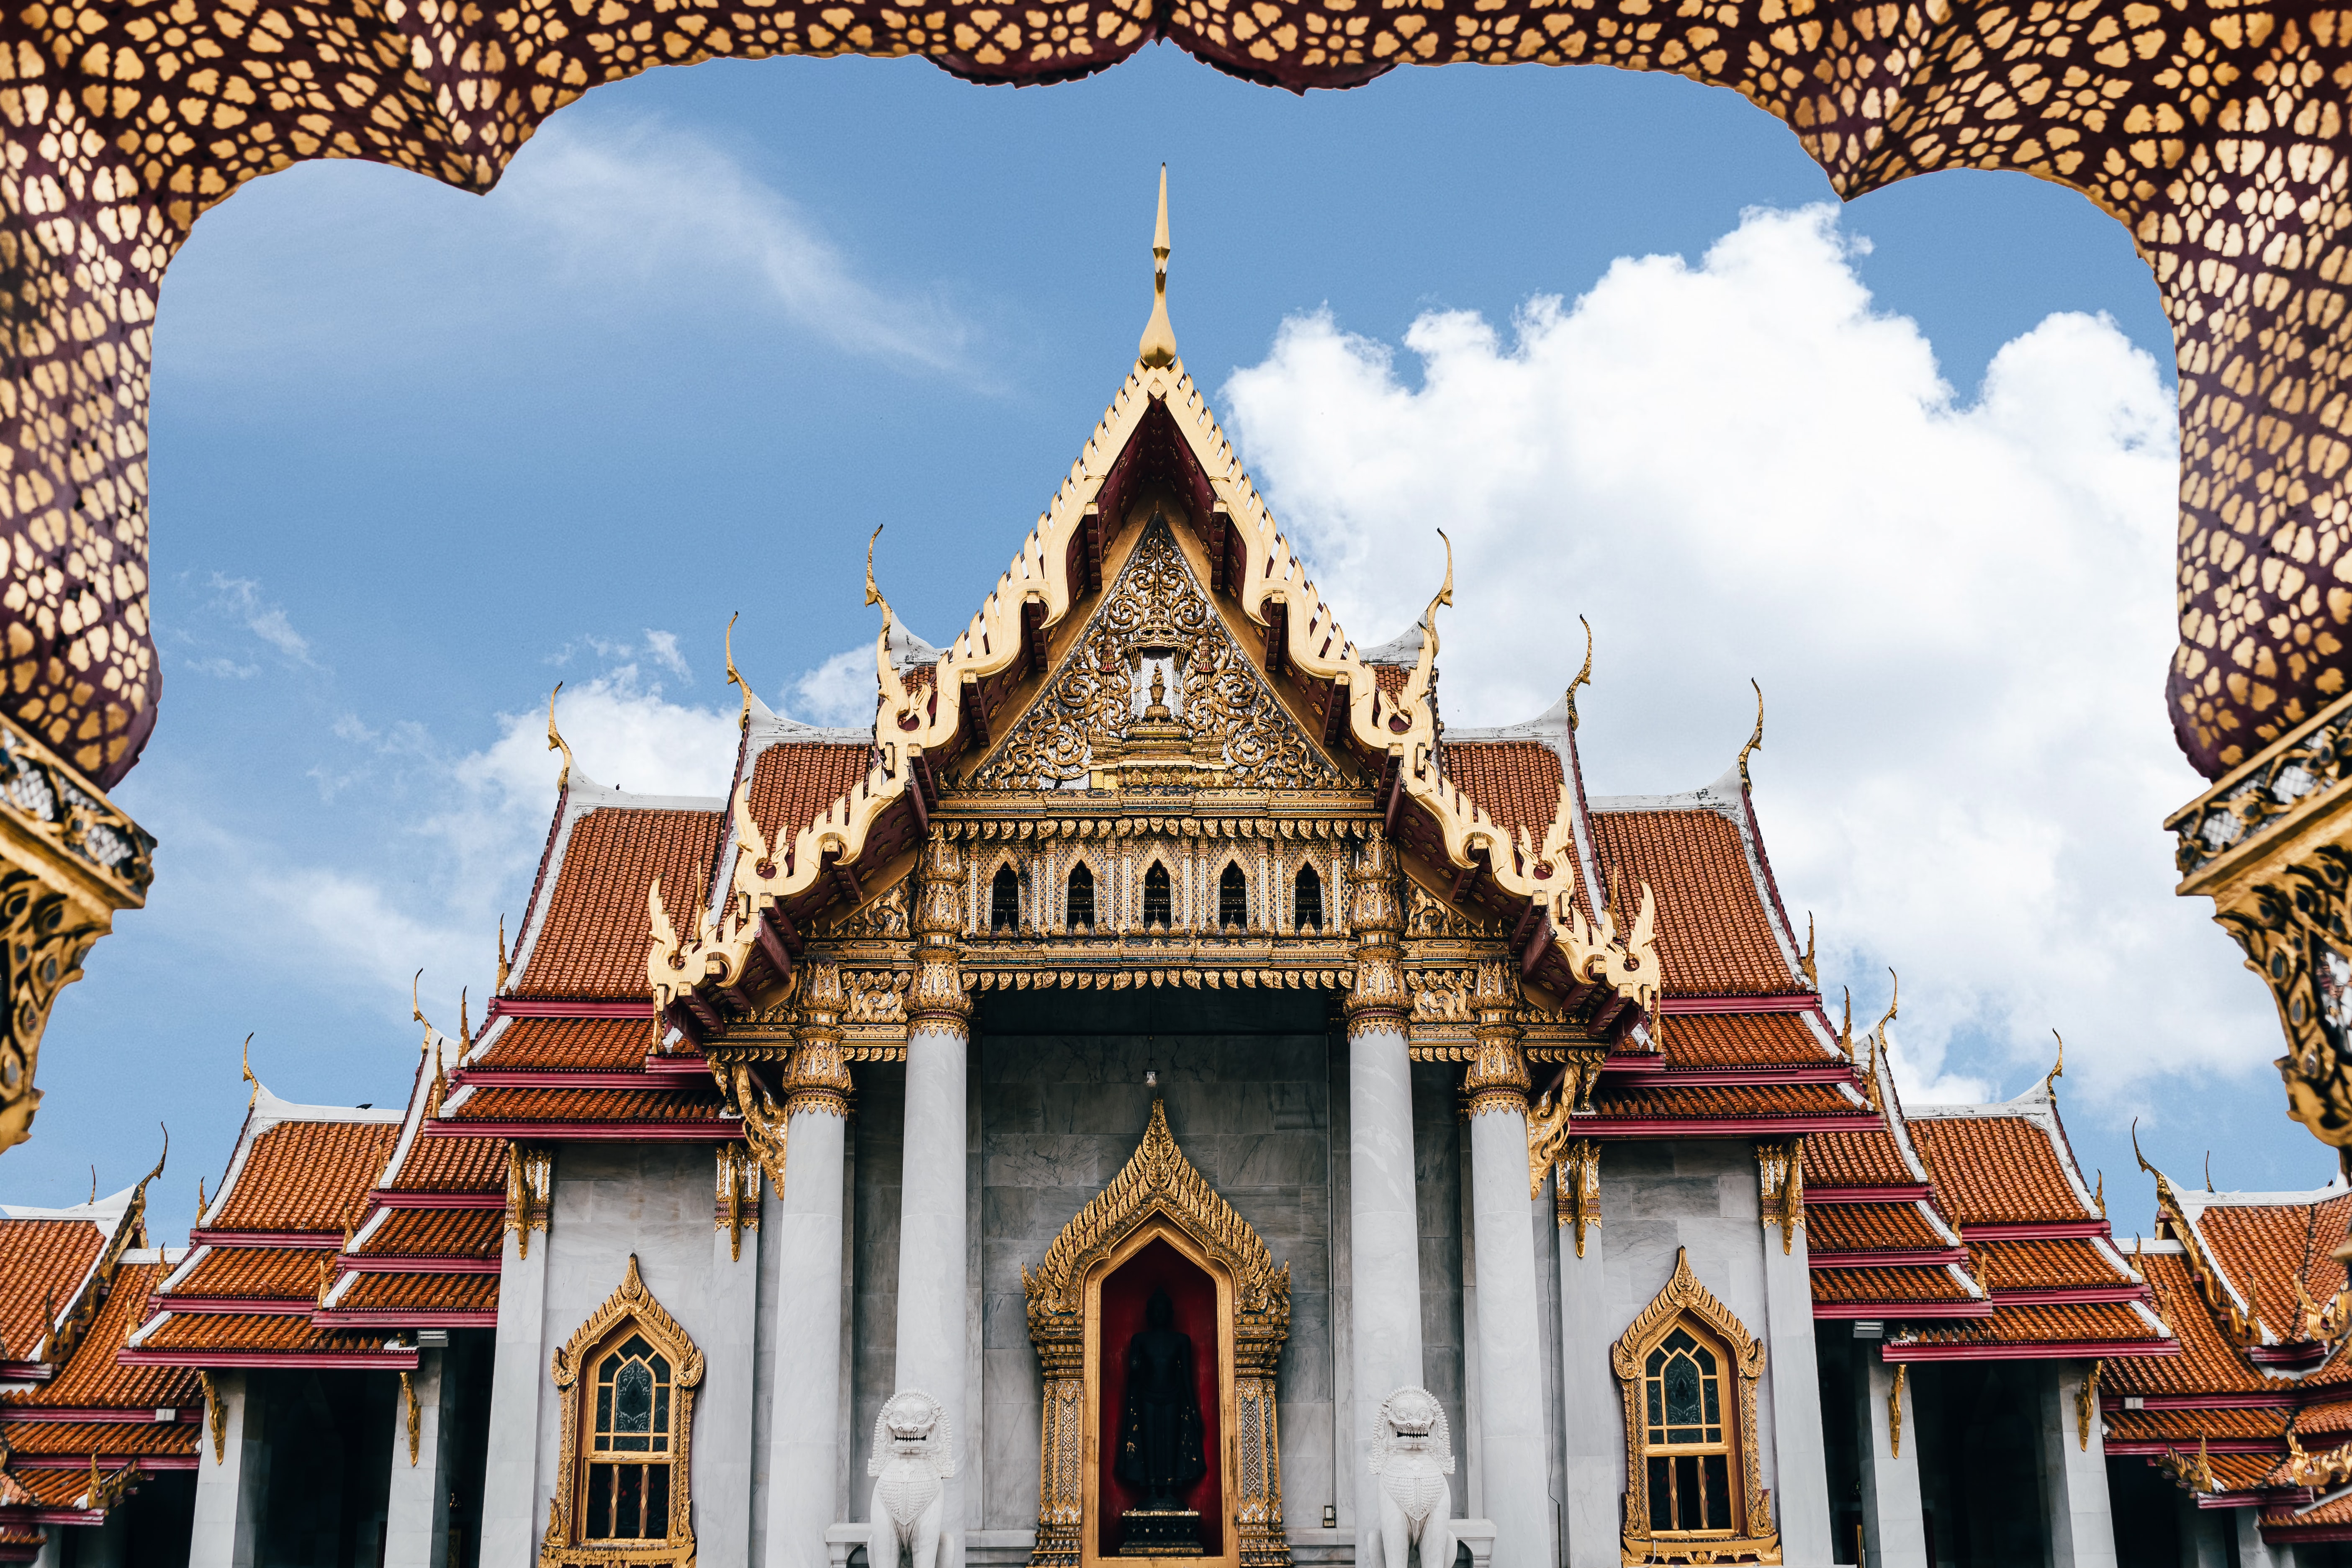 Temple exterior, Bangkok, Thailand